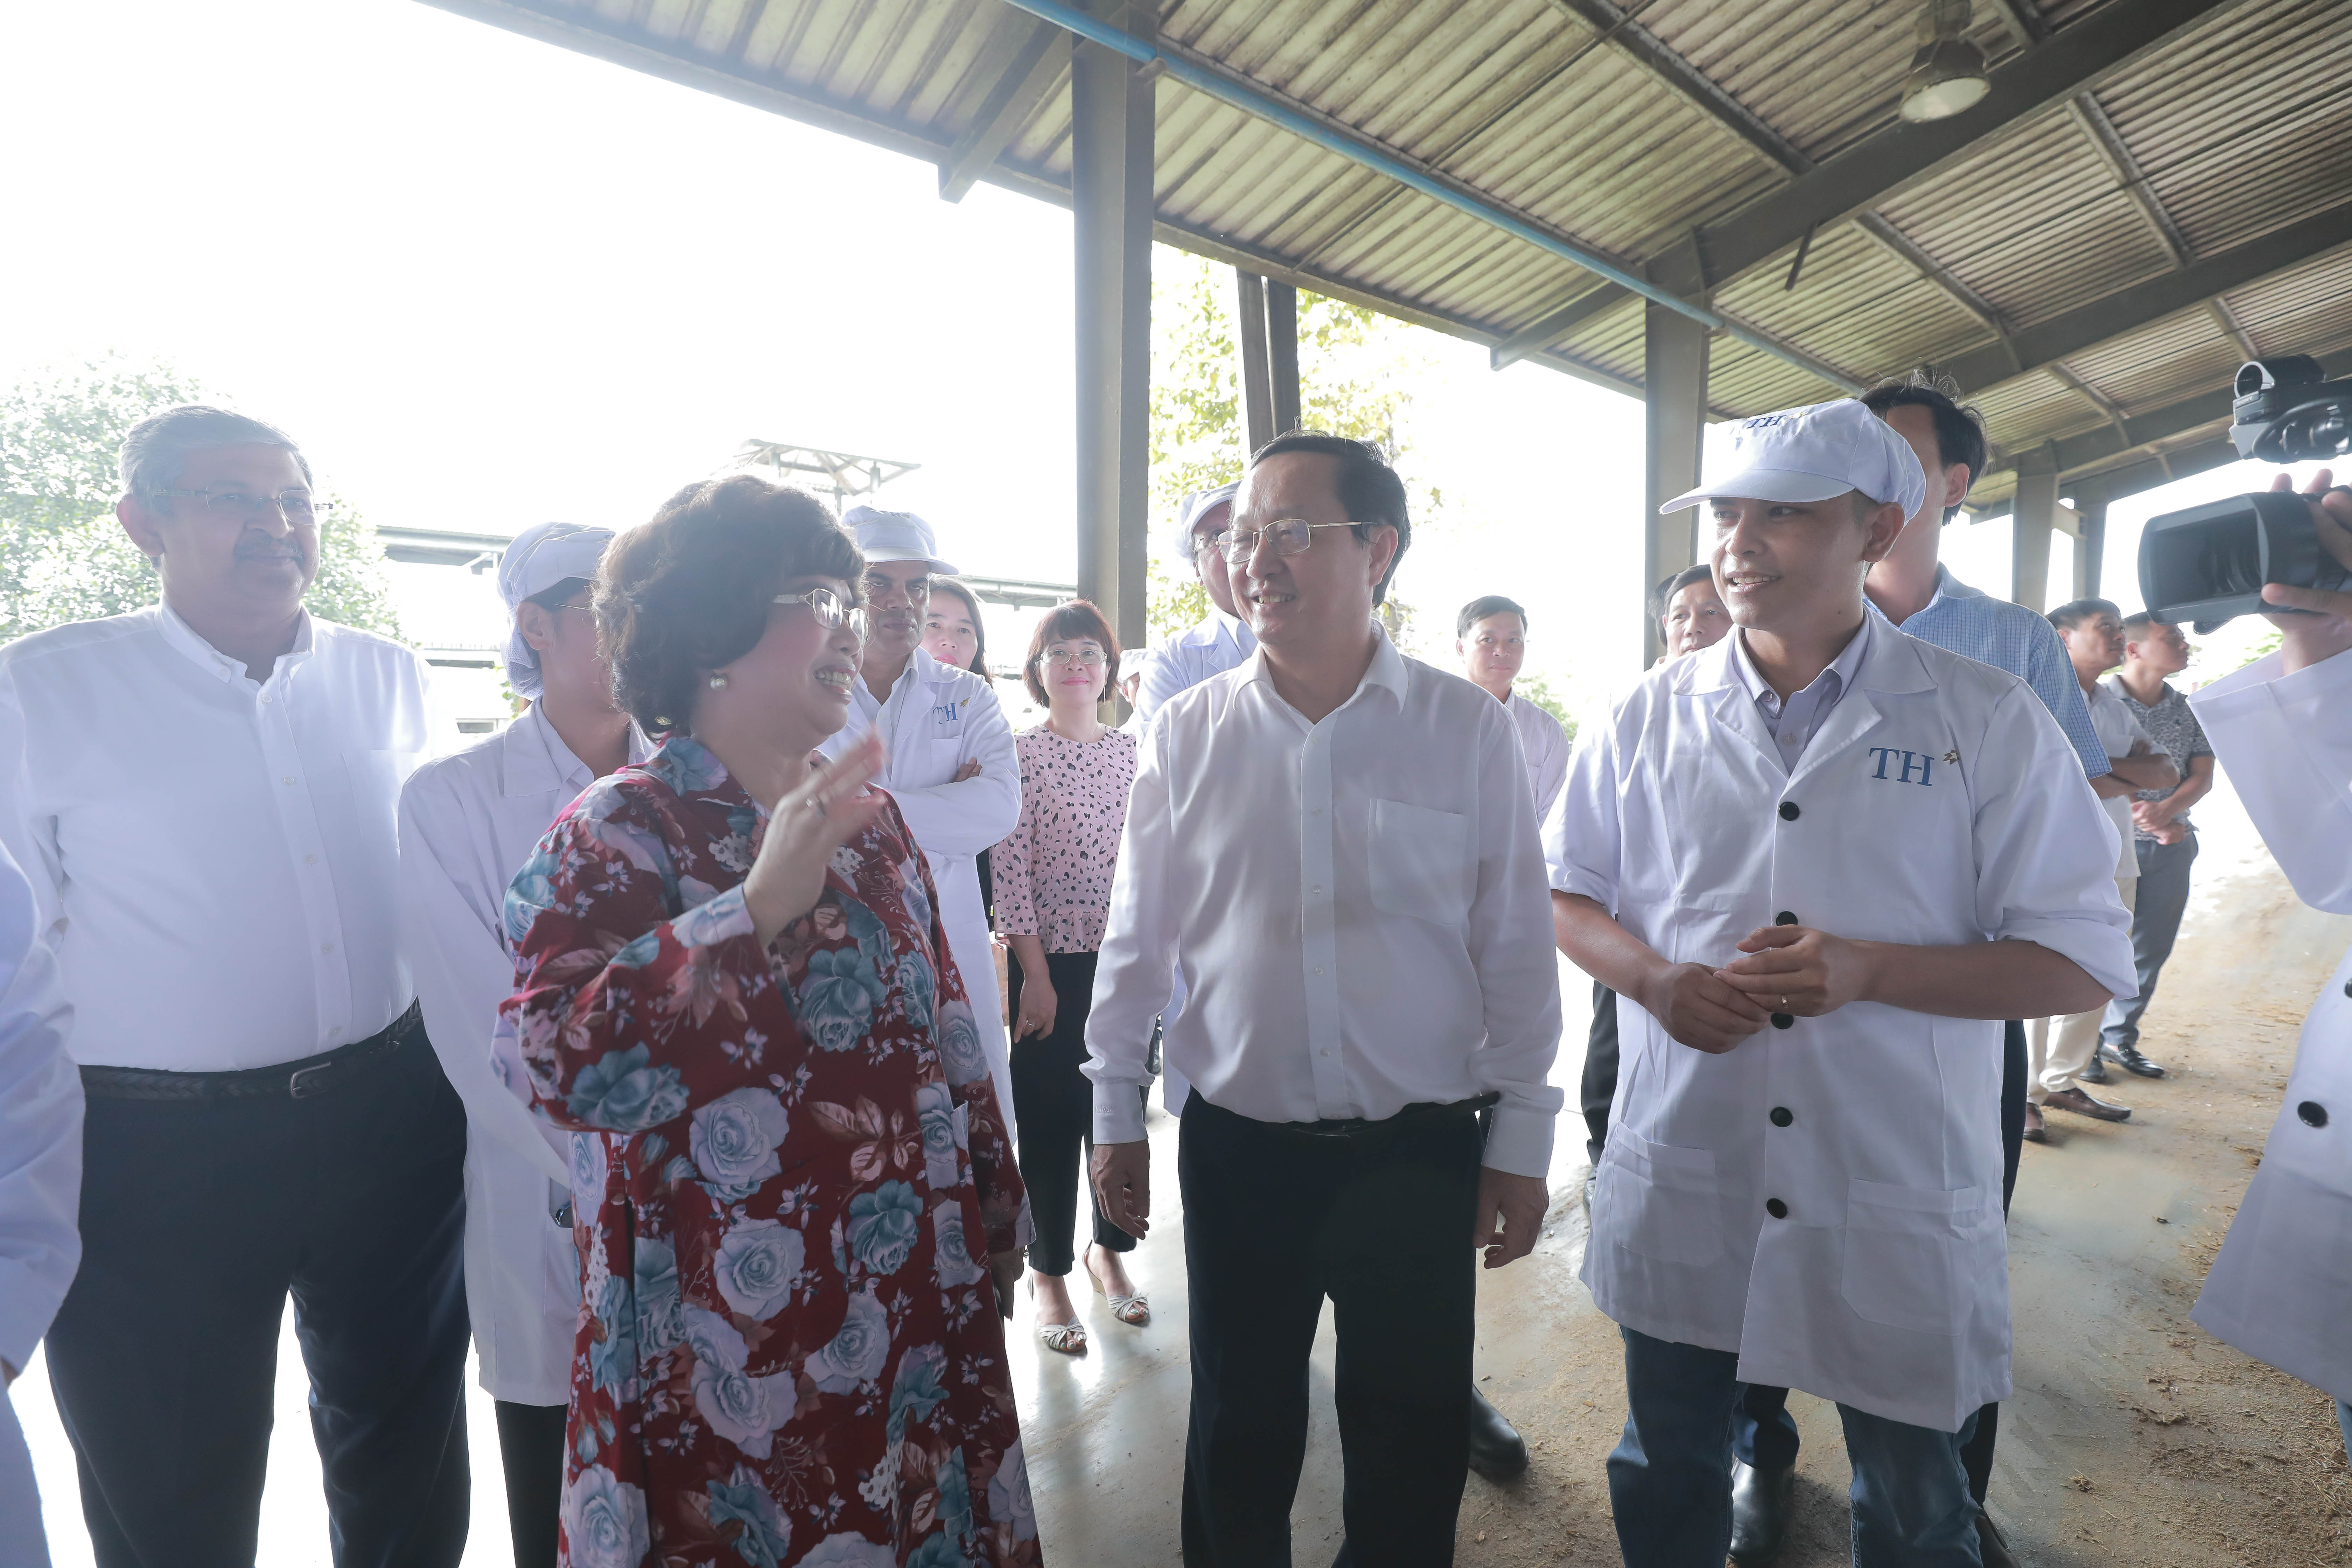 Bà Thái Hương cùng các thành viên đoàn công tác đi thăm khu trang trại của Tập đoàn TH. Ảnh: Tập đoàn TH.